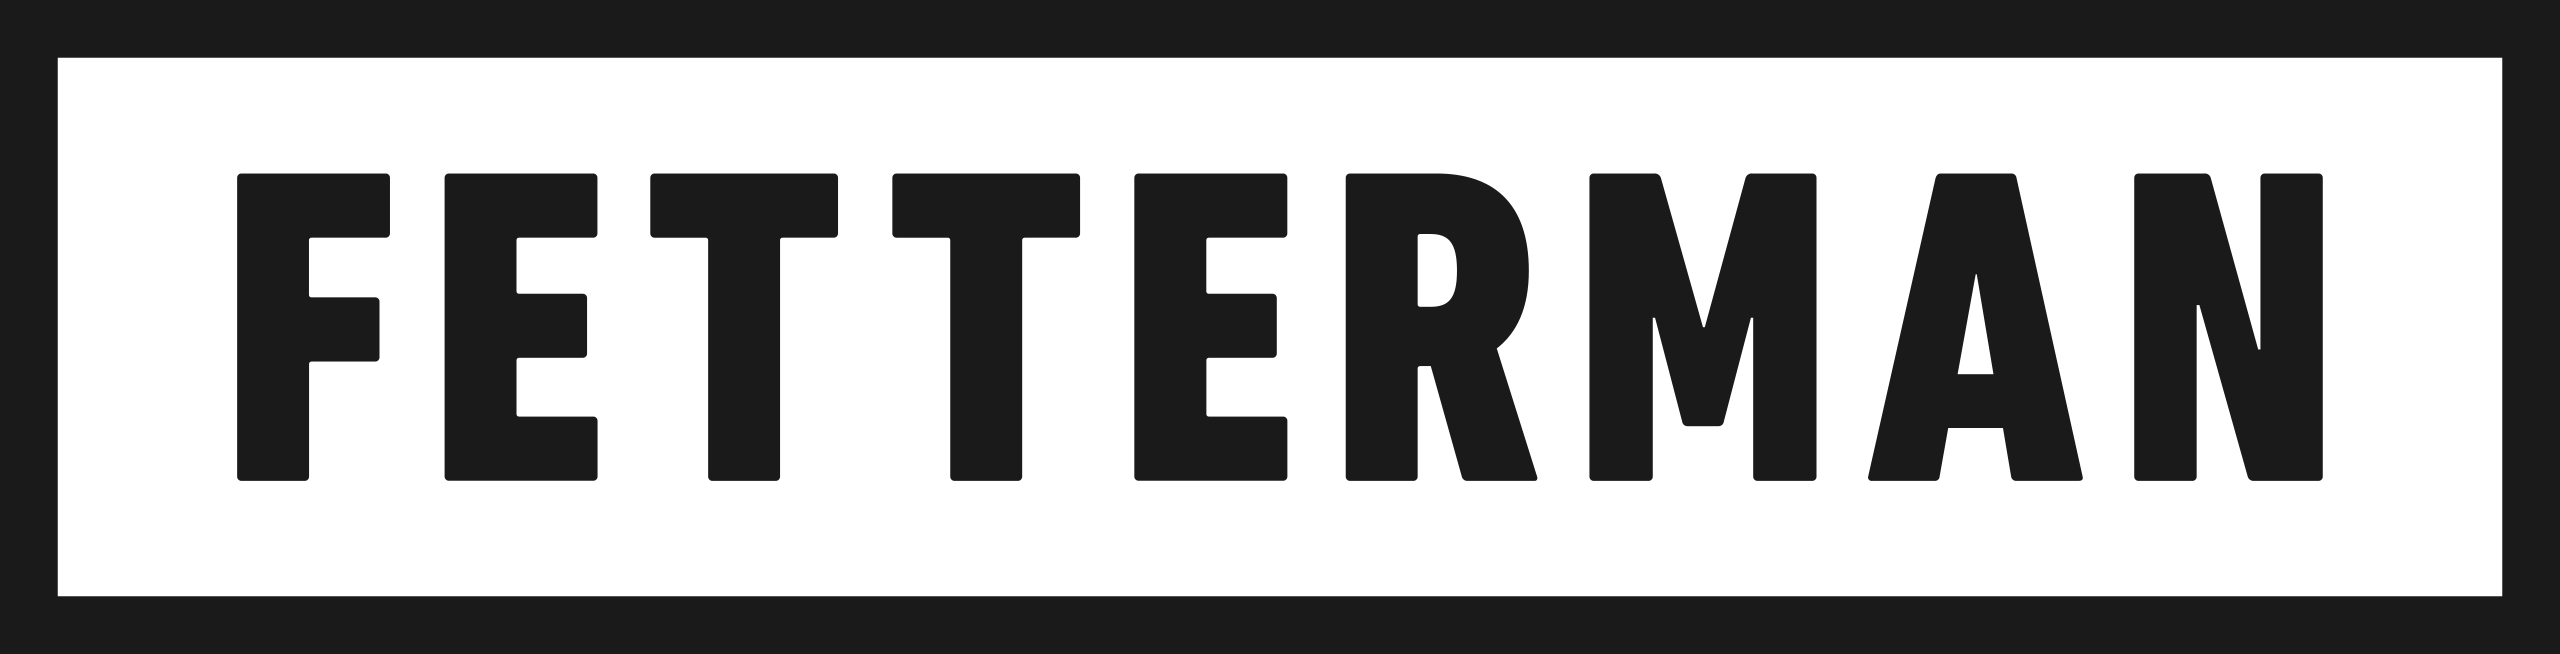 Fetterman_for_Senate_logo.svg